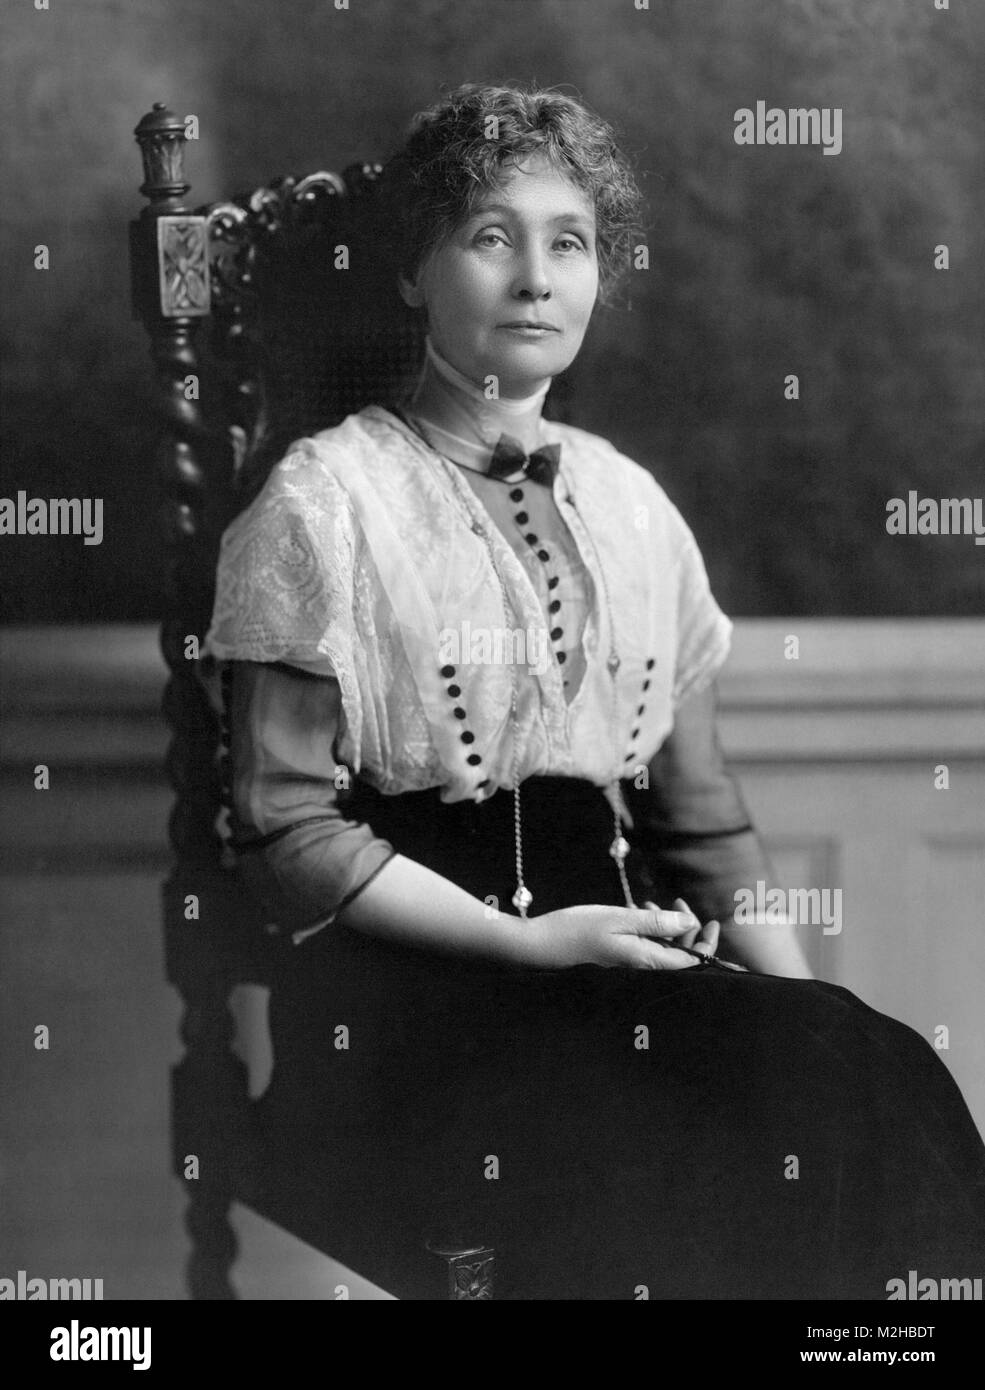 Emmeline Pankhurst (1858-1928) Britische politische Aktivist und Führer der britischen Suffragettenbewegung, die dazu beigetragen haben, den Frauen das Wahlrecht zu gewinnen Stockfoto